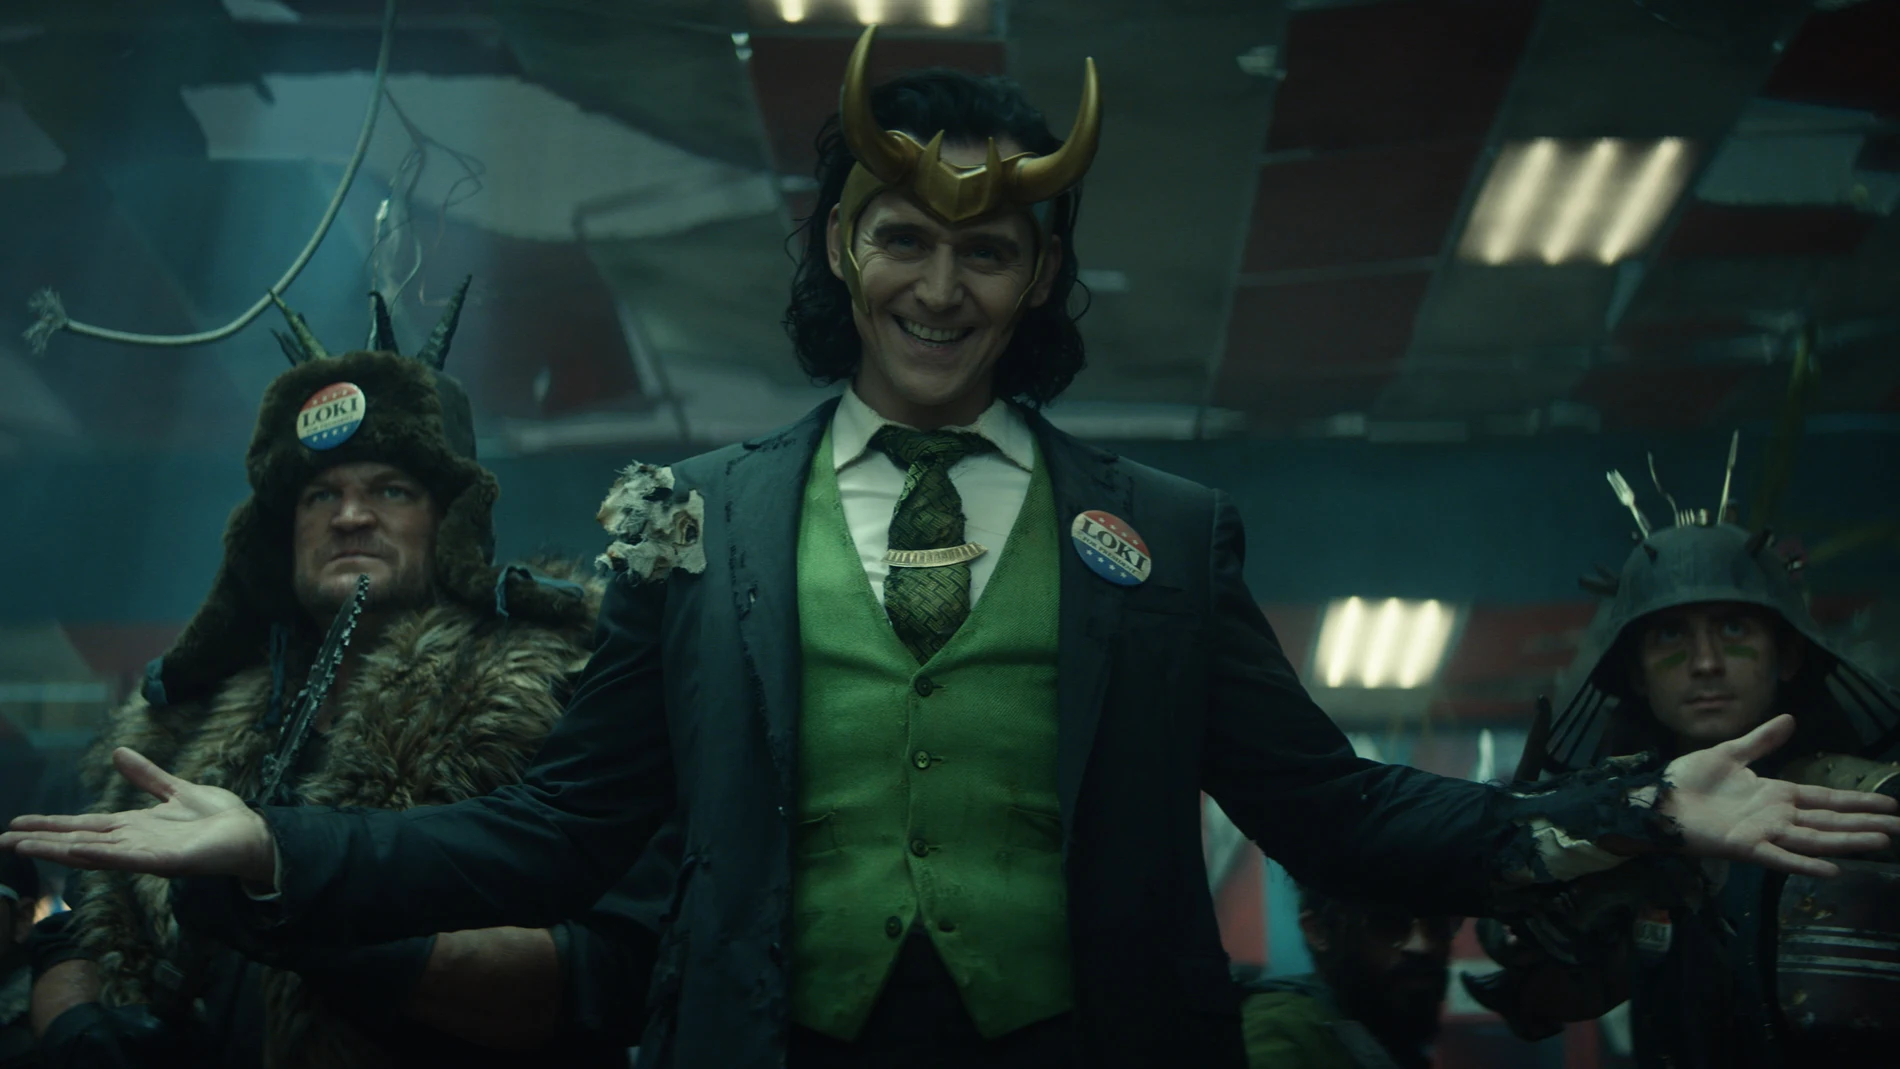 Tom Hiddleston vuelve al papel que le ha dado fama en el mundo entero en "Loki", que se estrena esta semana en Disney+ ©Marvel Studios 2020. All Rights Reserved.